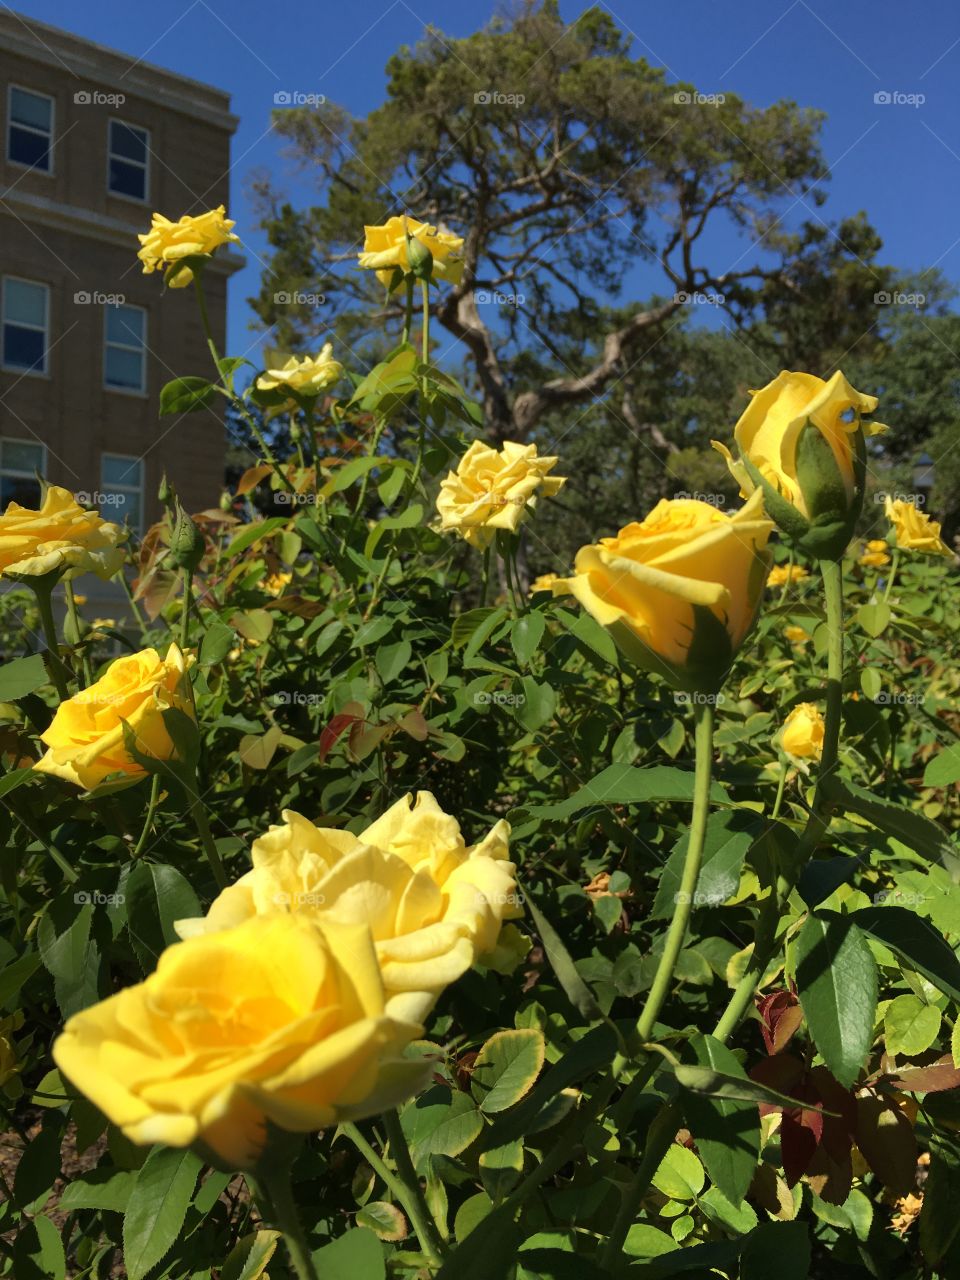 Yellow Roses blue sky. Taken while biking on campus 